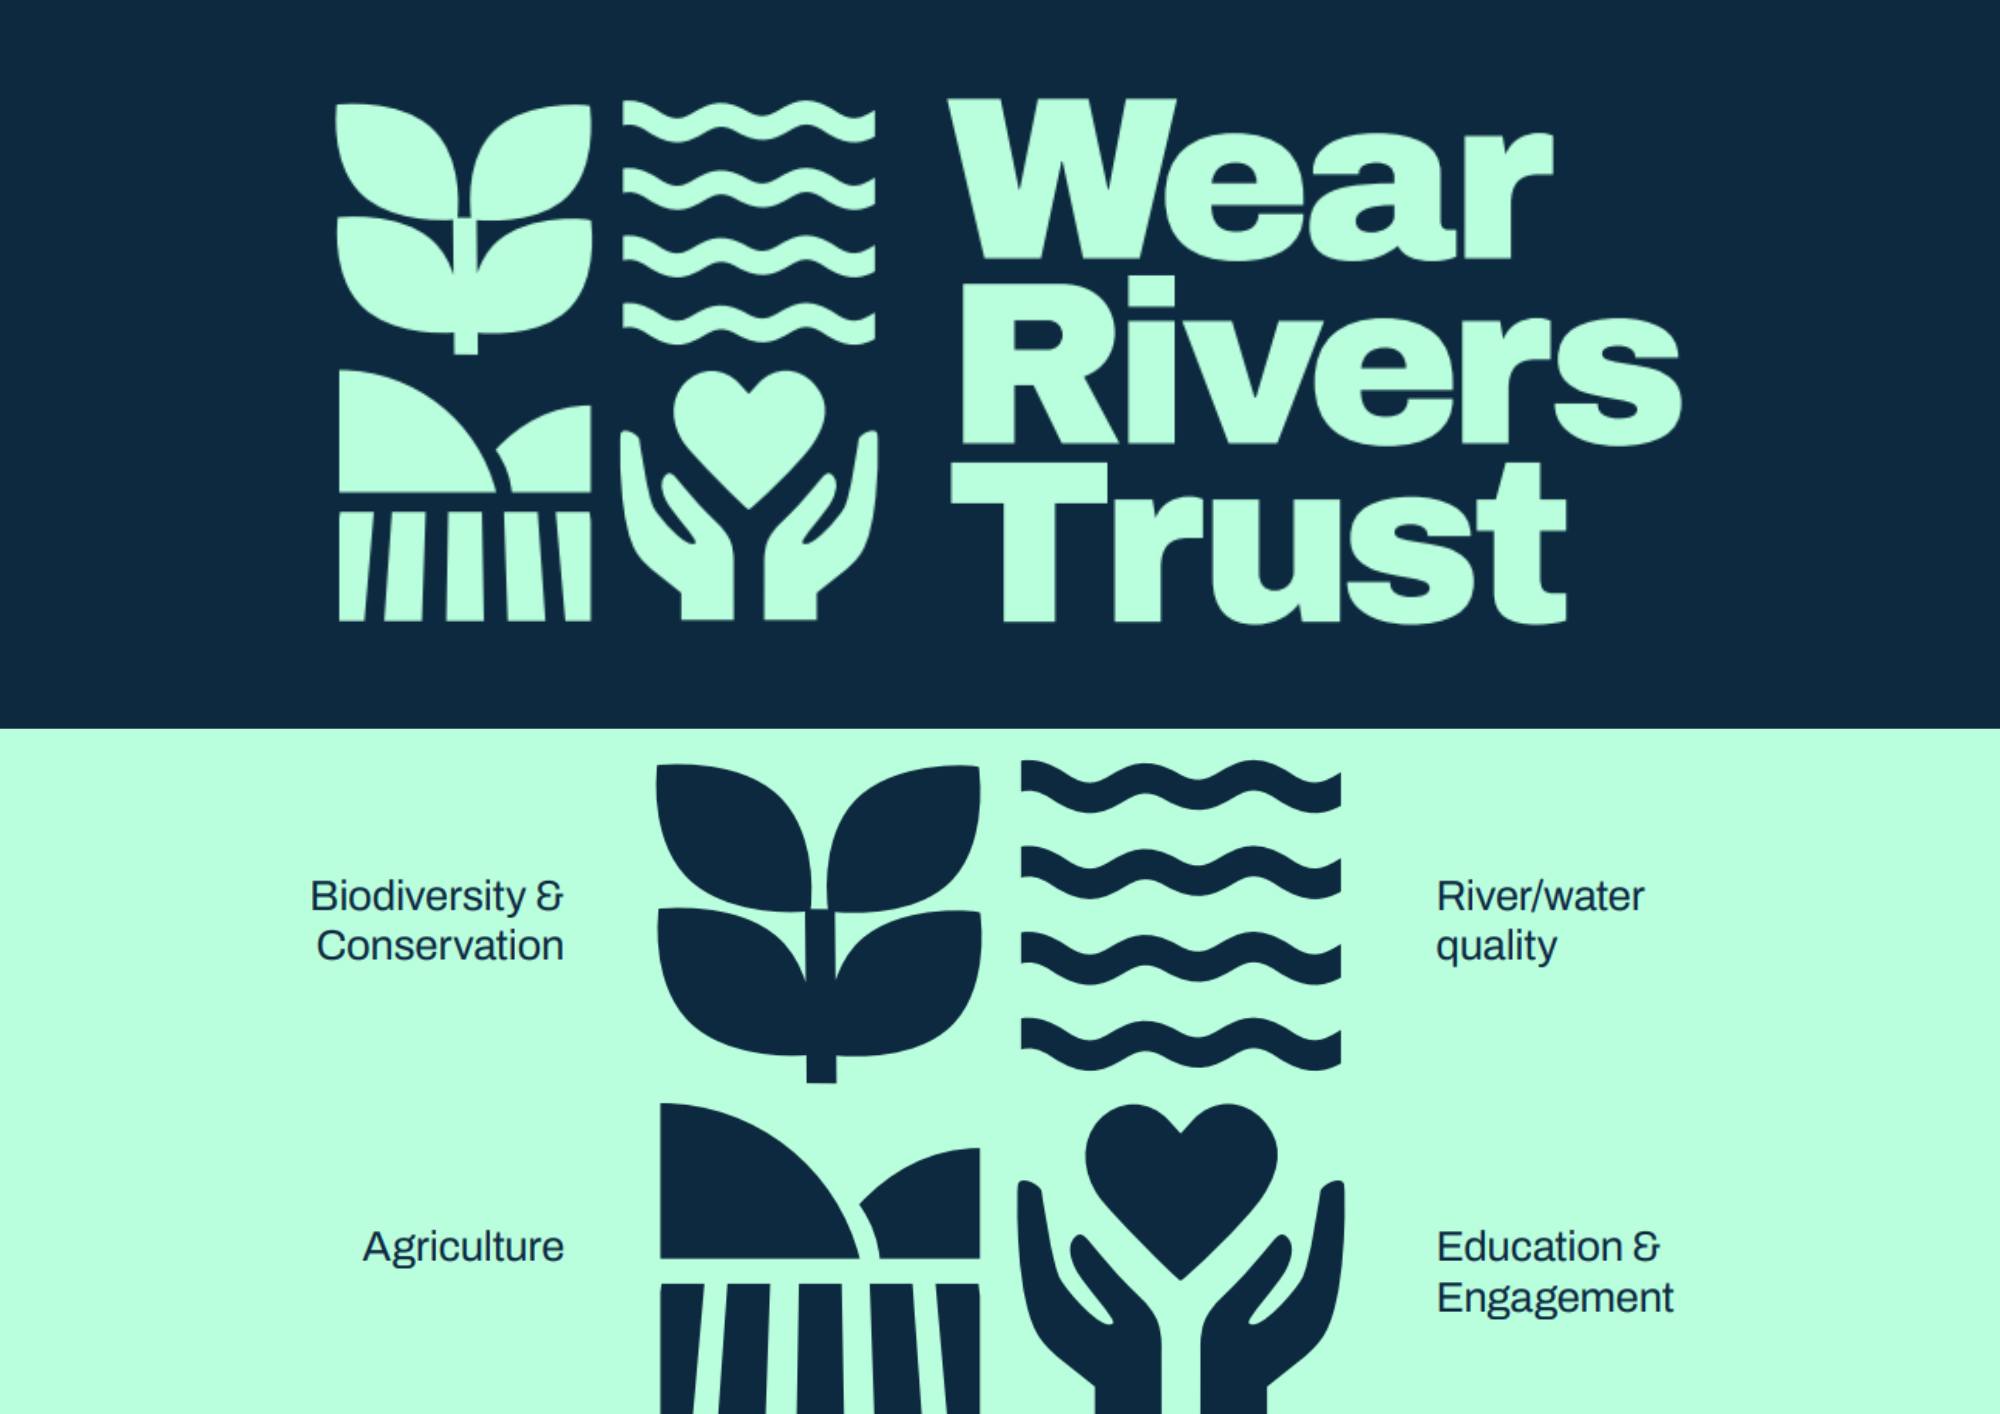 Wear Rivers Trust has rebranded!